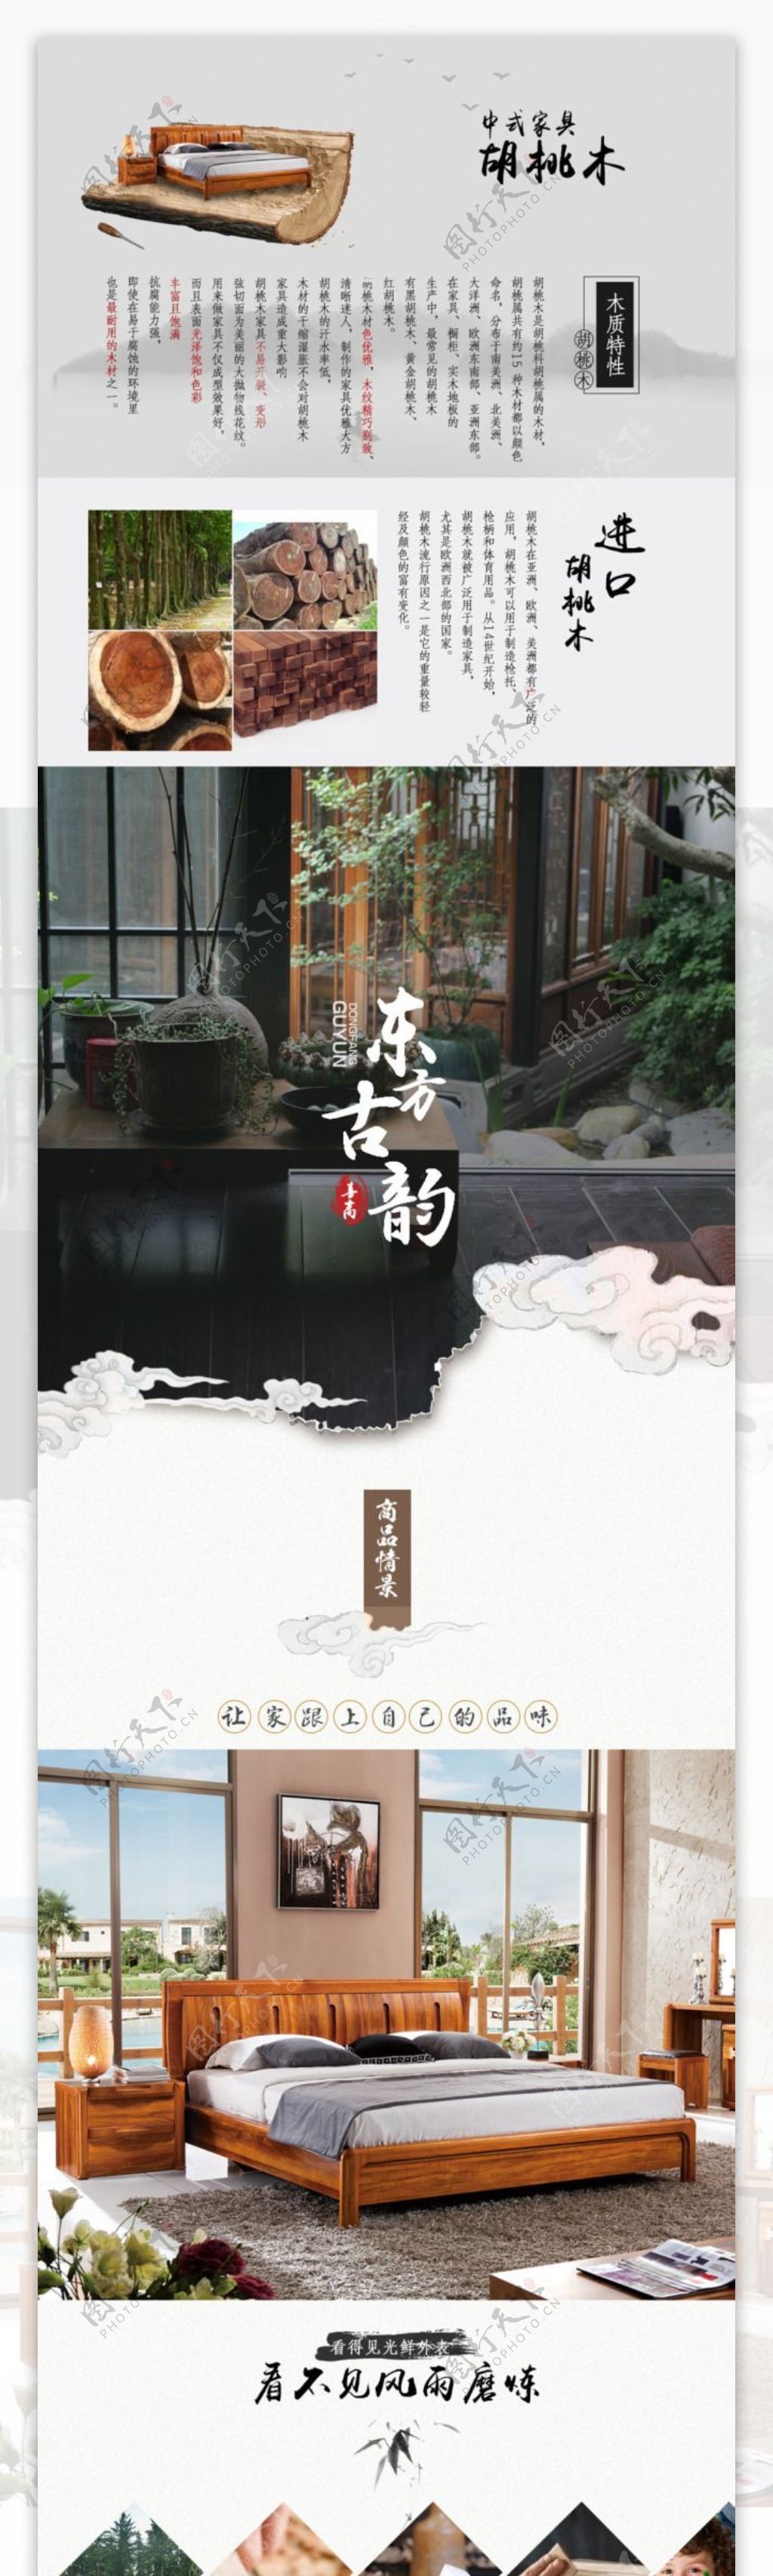 中式实木床家具中国风天猫淘宝详情页模板